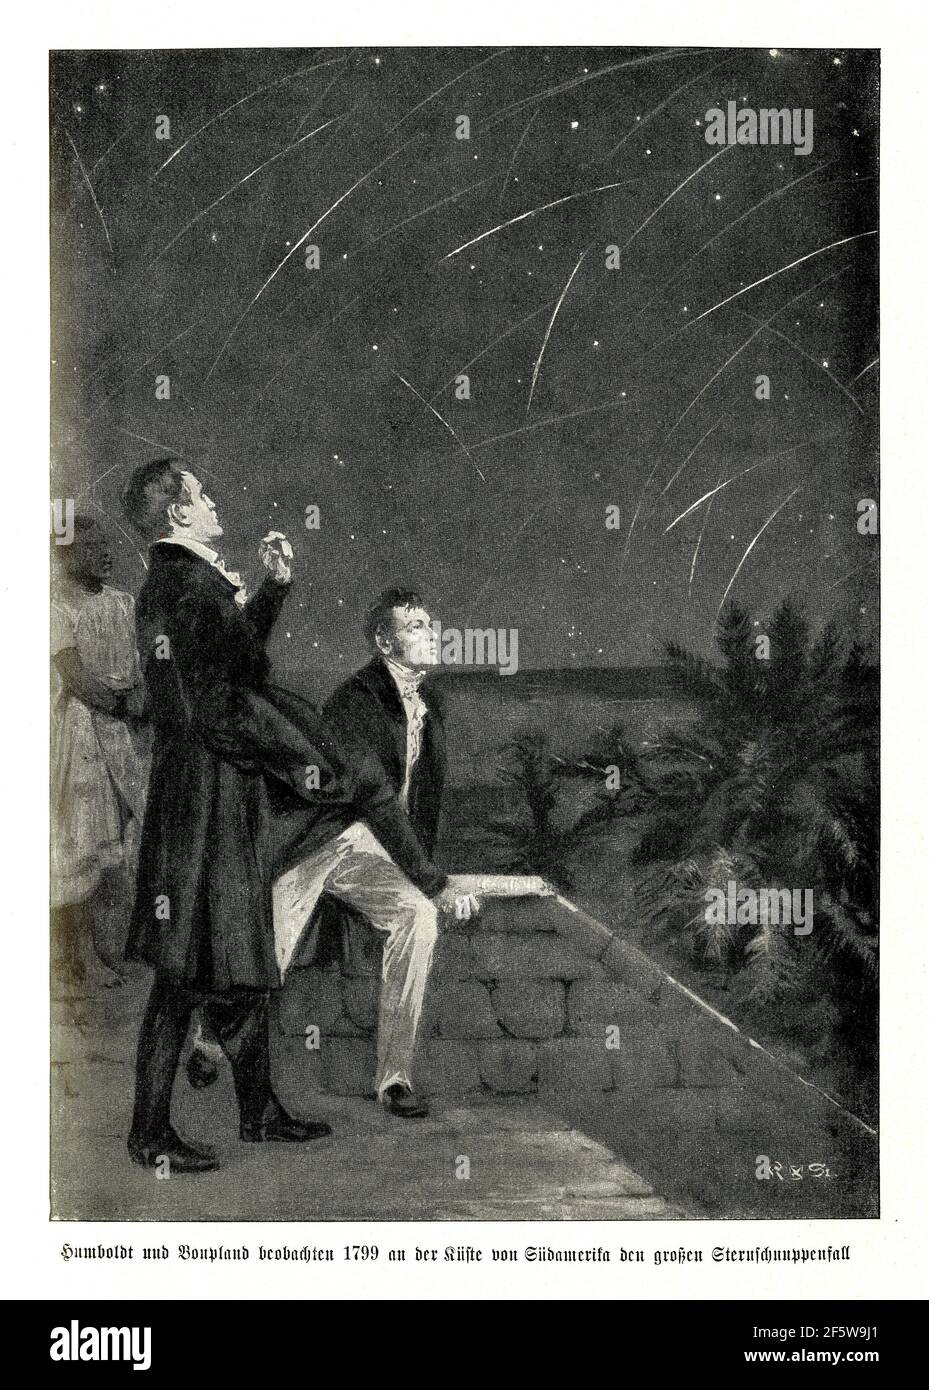 Alexander von Humboldt et Aimee Bonpland observent la grande chute Étoile sur la côte de l'Amérique du Sud en 1799 Banque D'Images